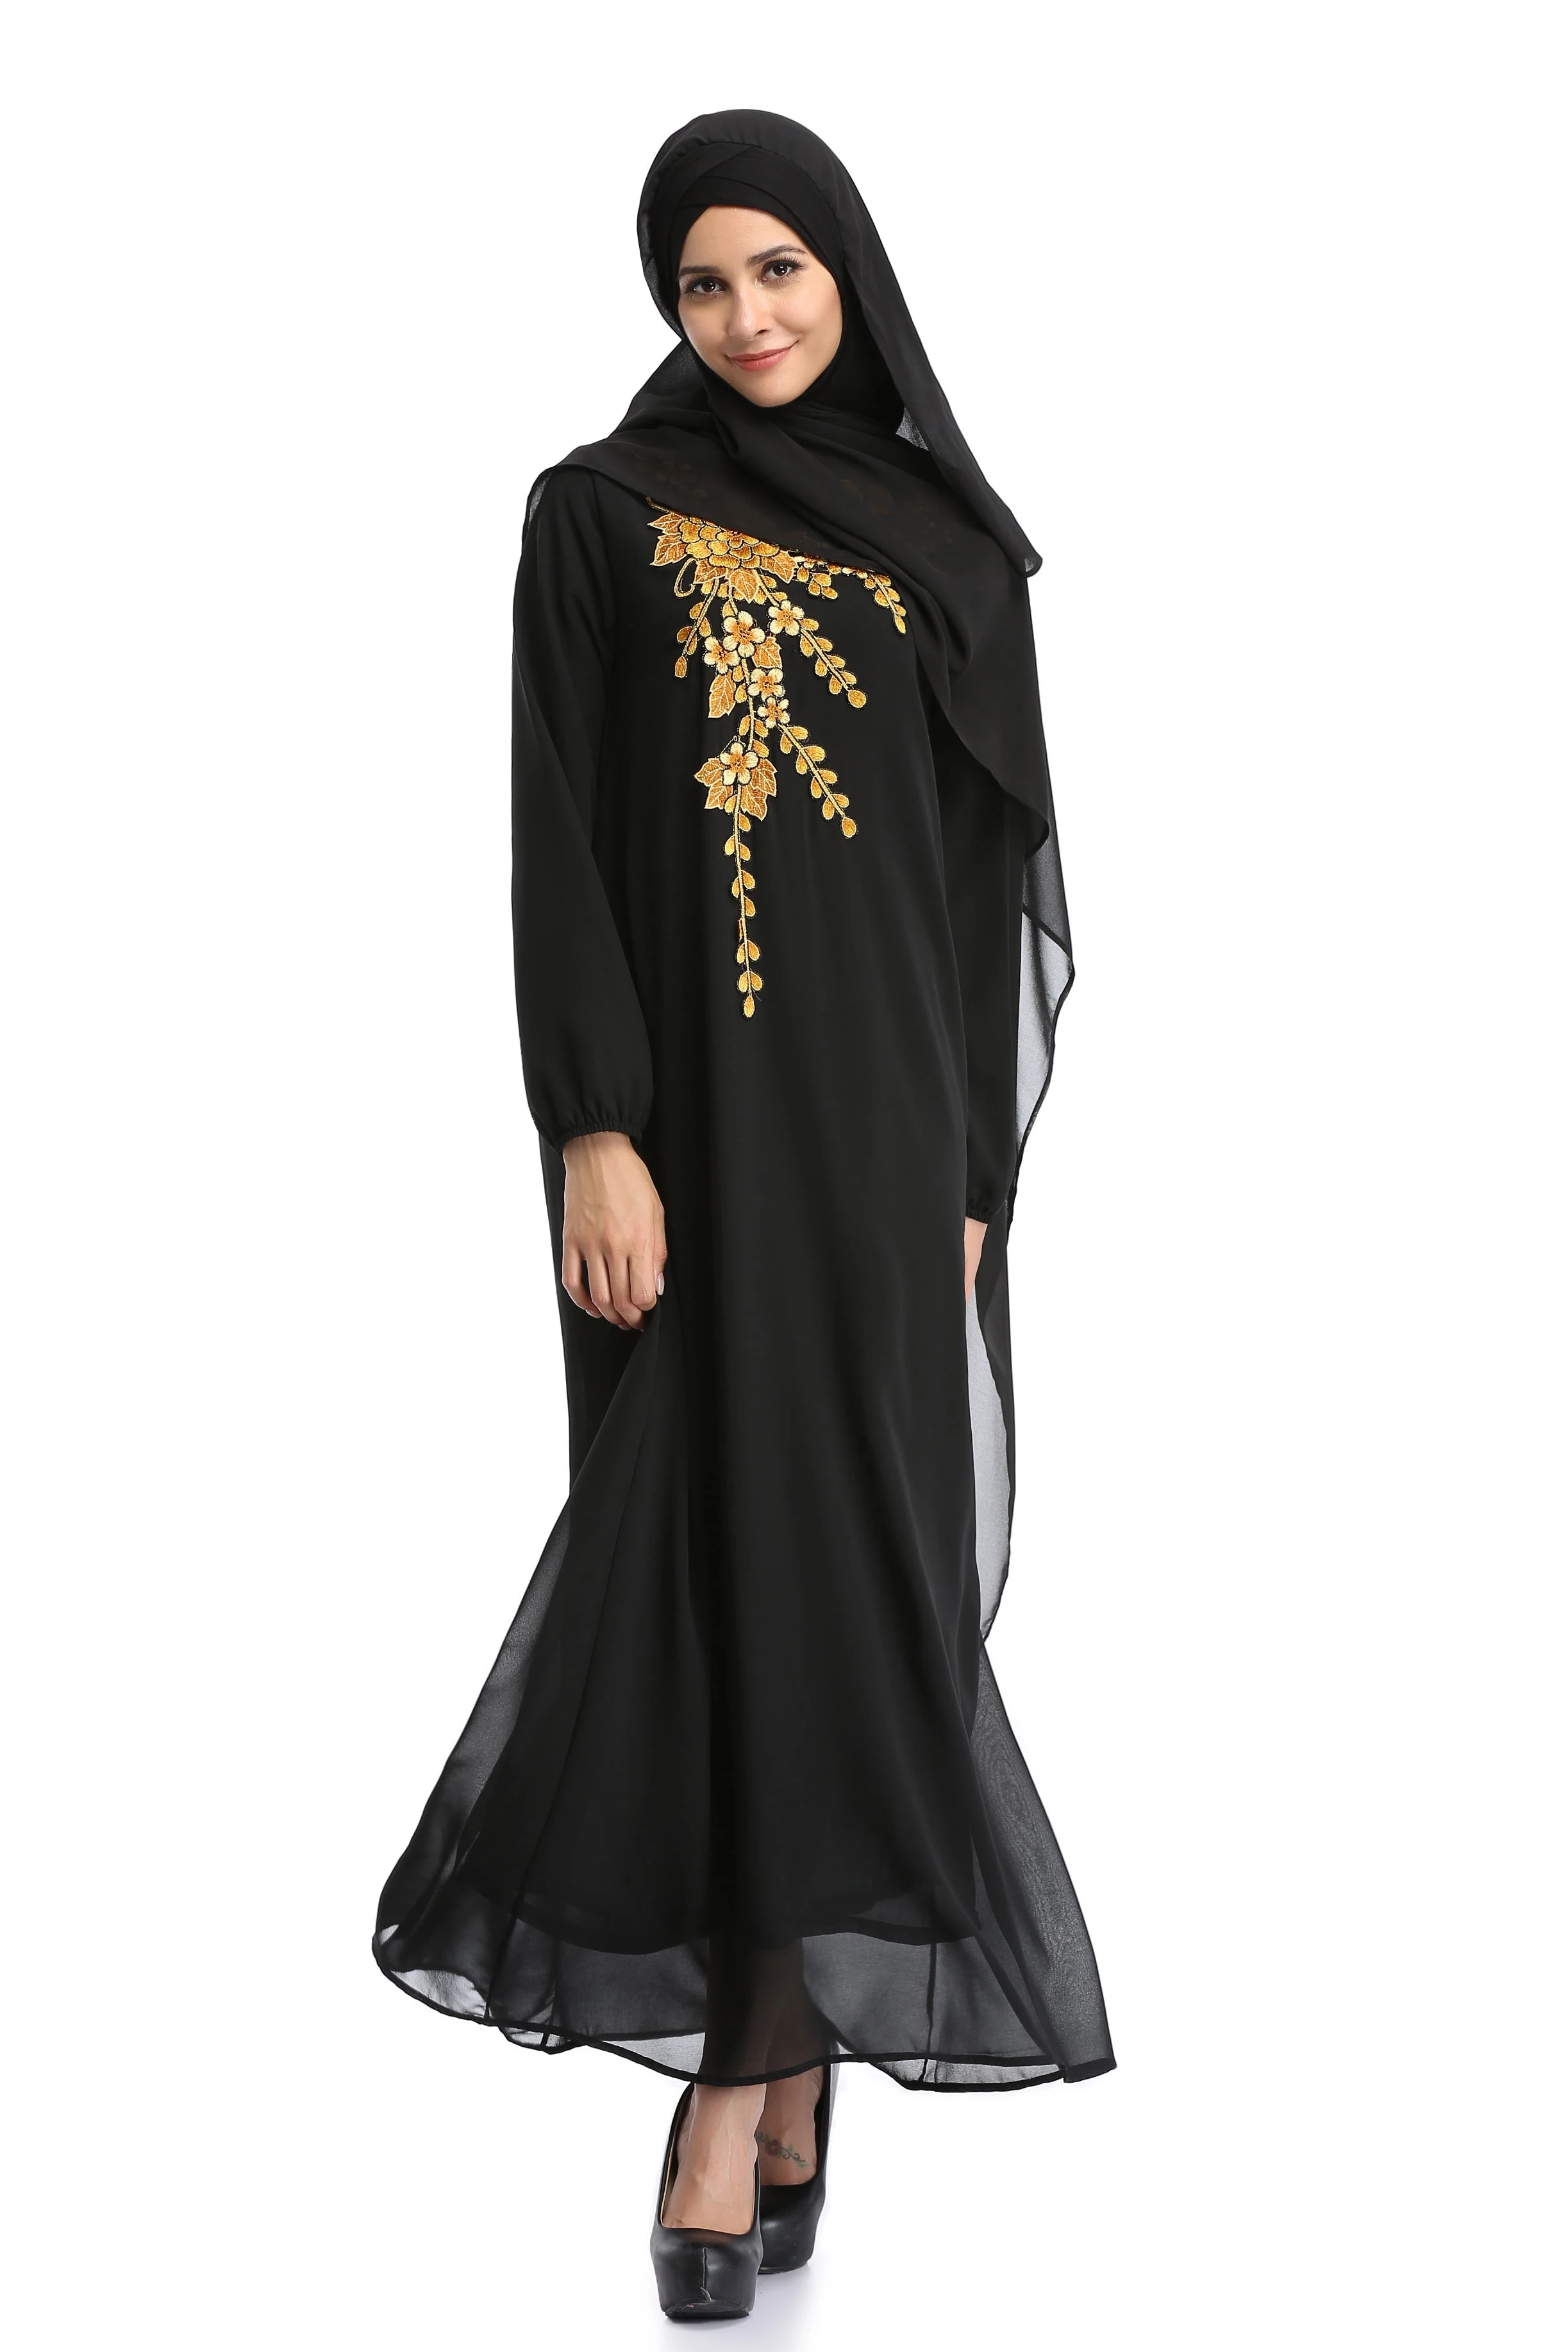 Женское свободное платье с вышивкой, в мусульманском стиле